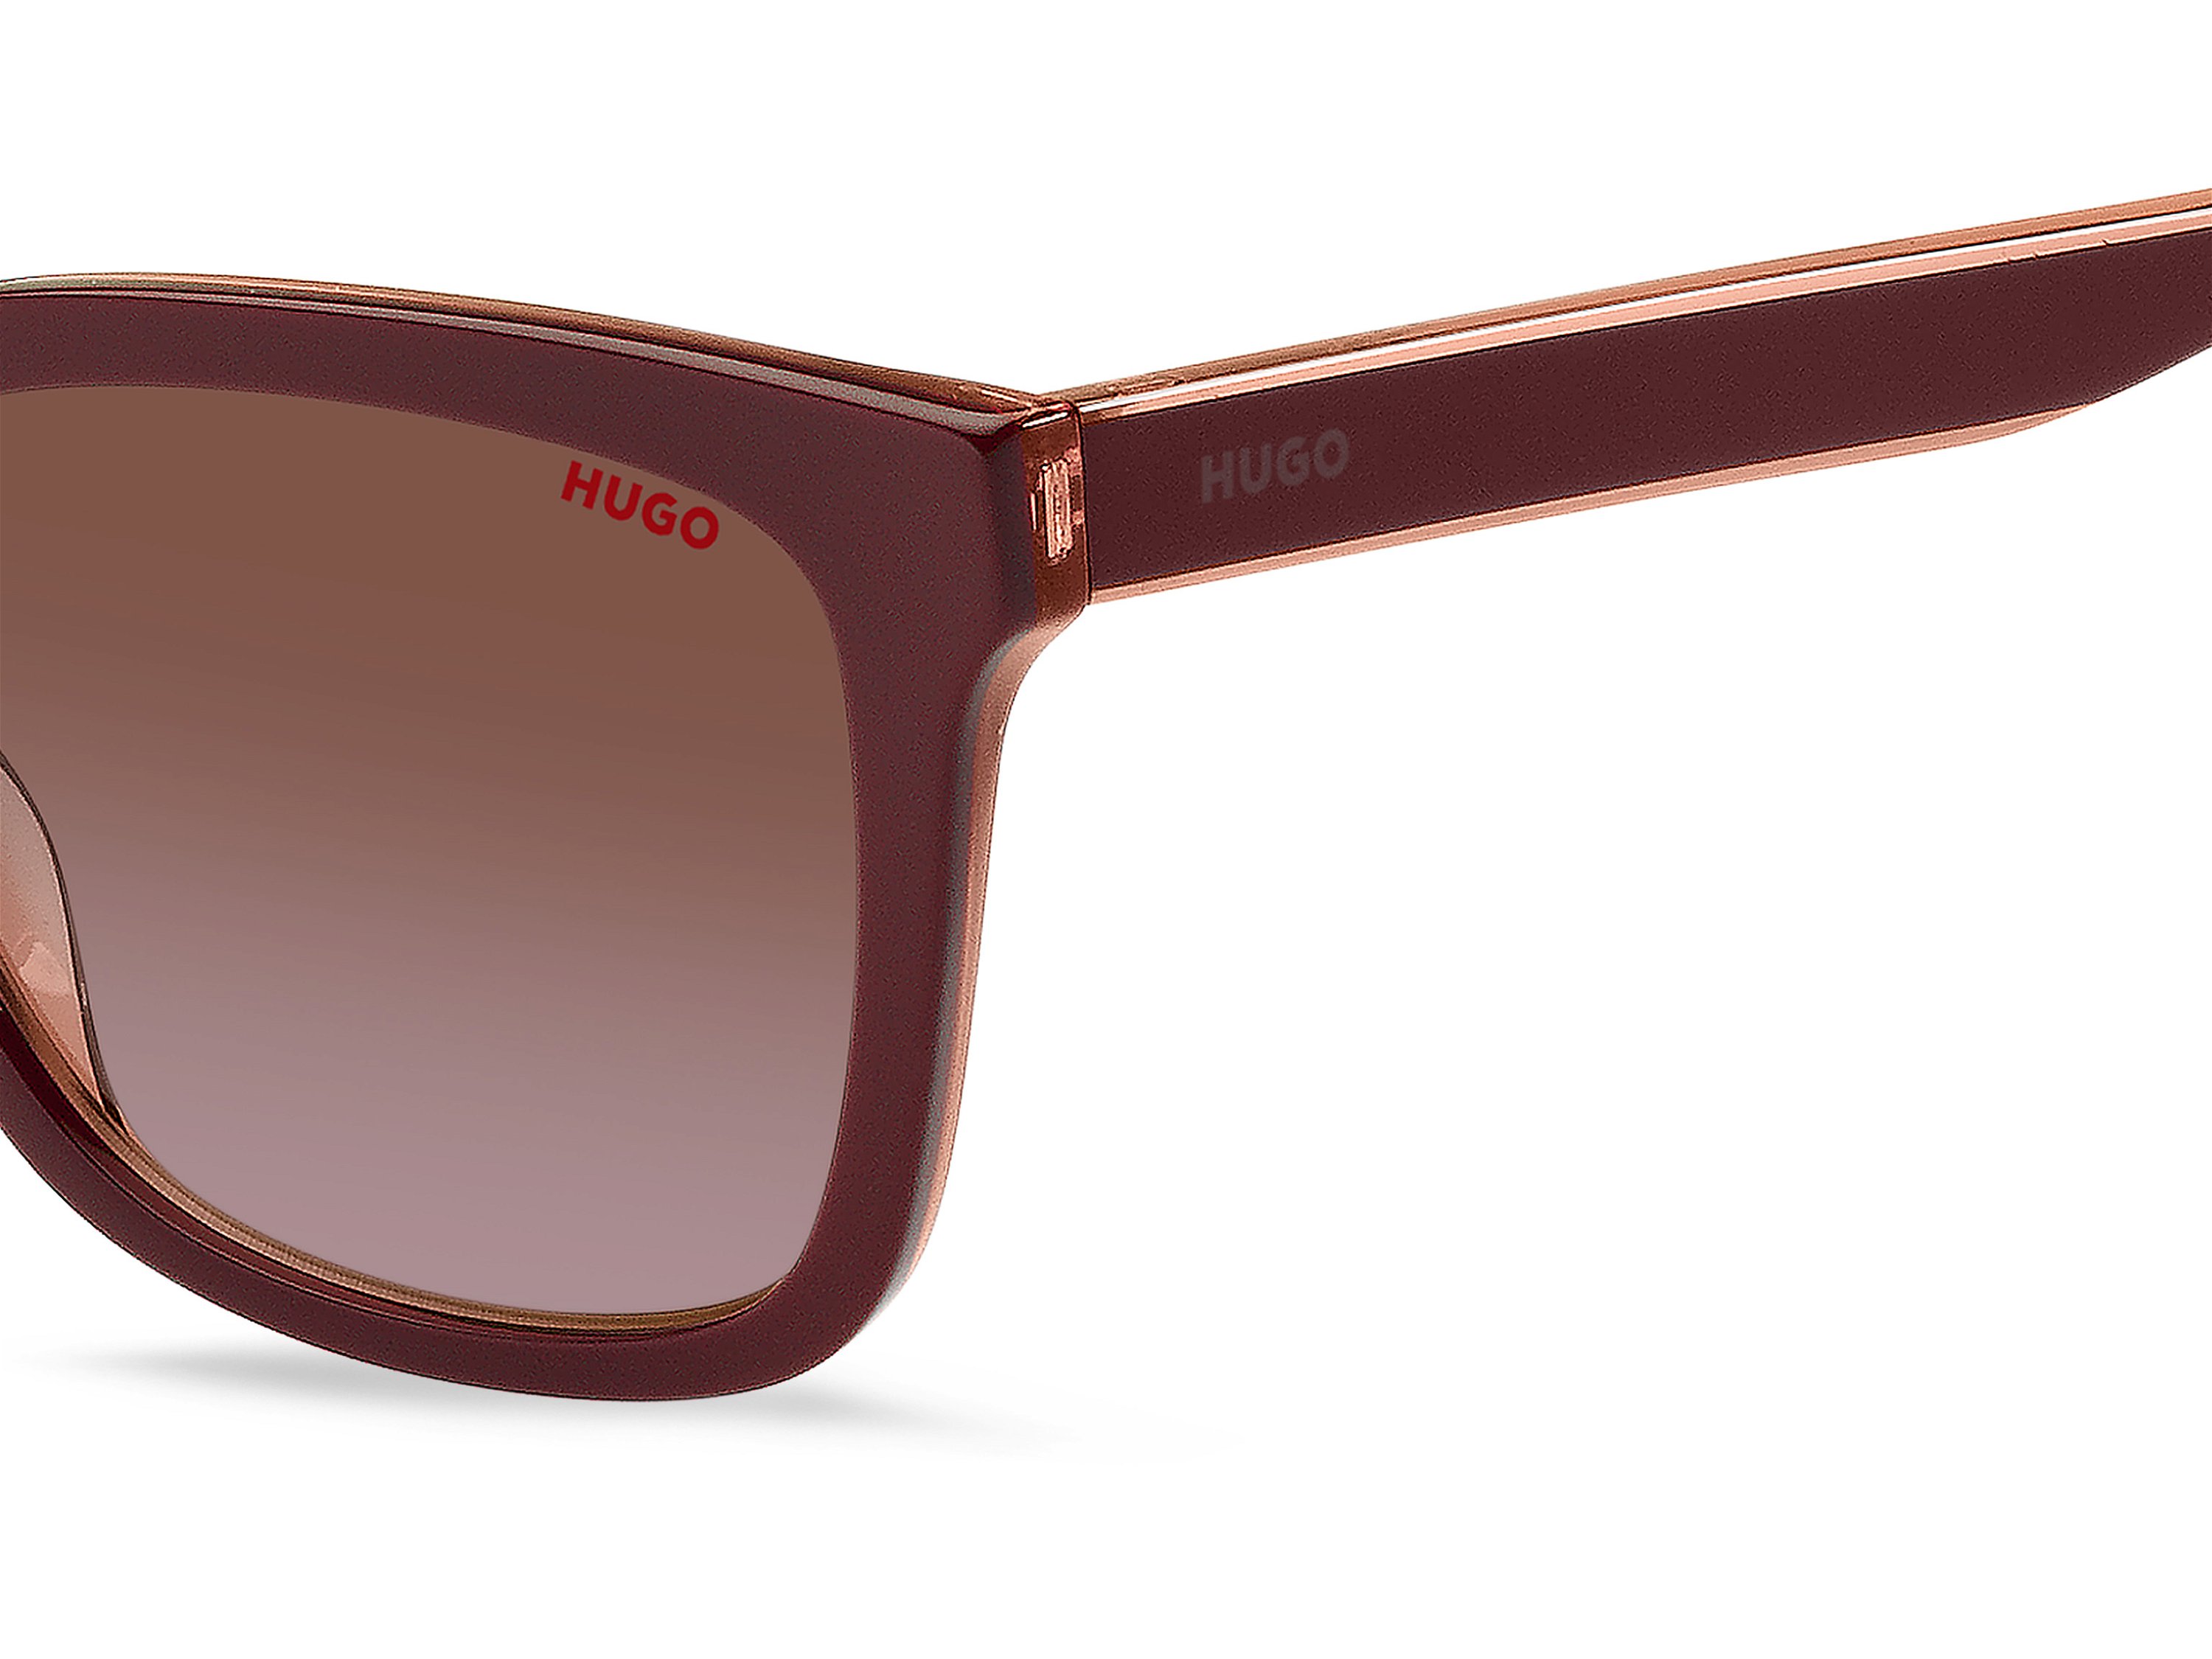 Das Bild zeigt die Sonnenbrille HG1248/S 0T5 von der Marke Hugo in schwarz/rot.